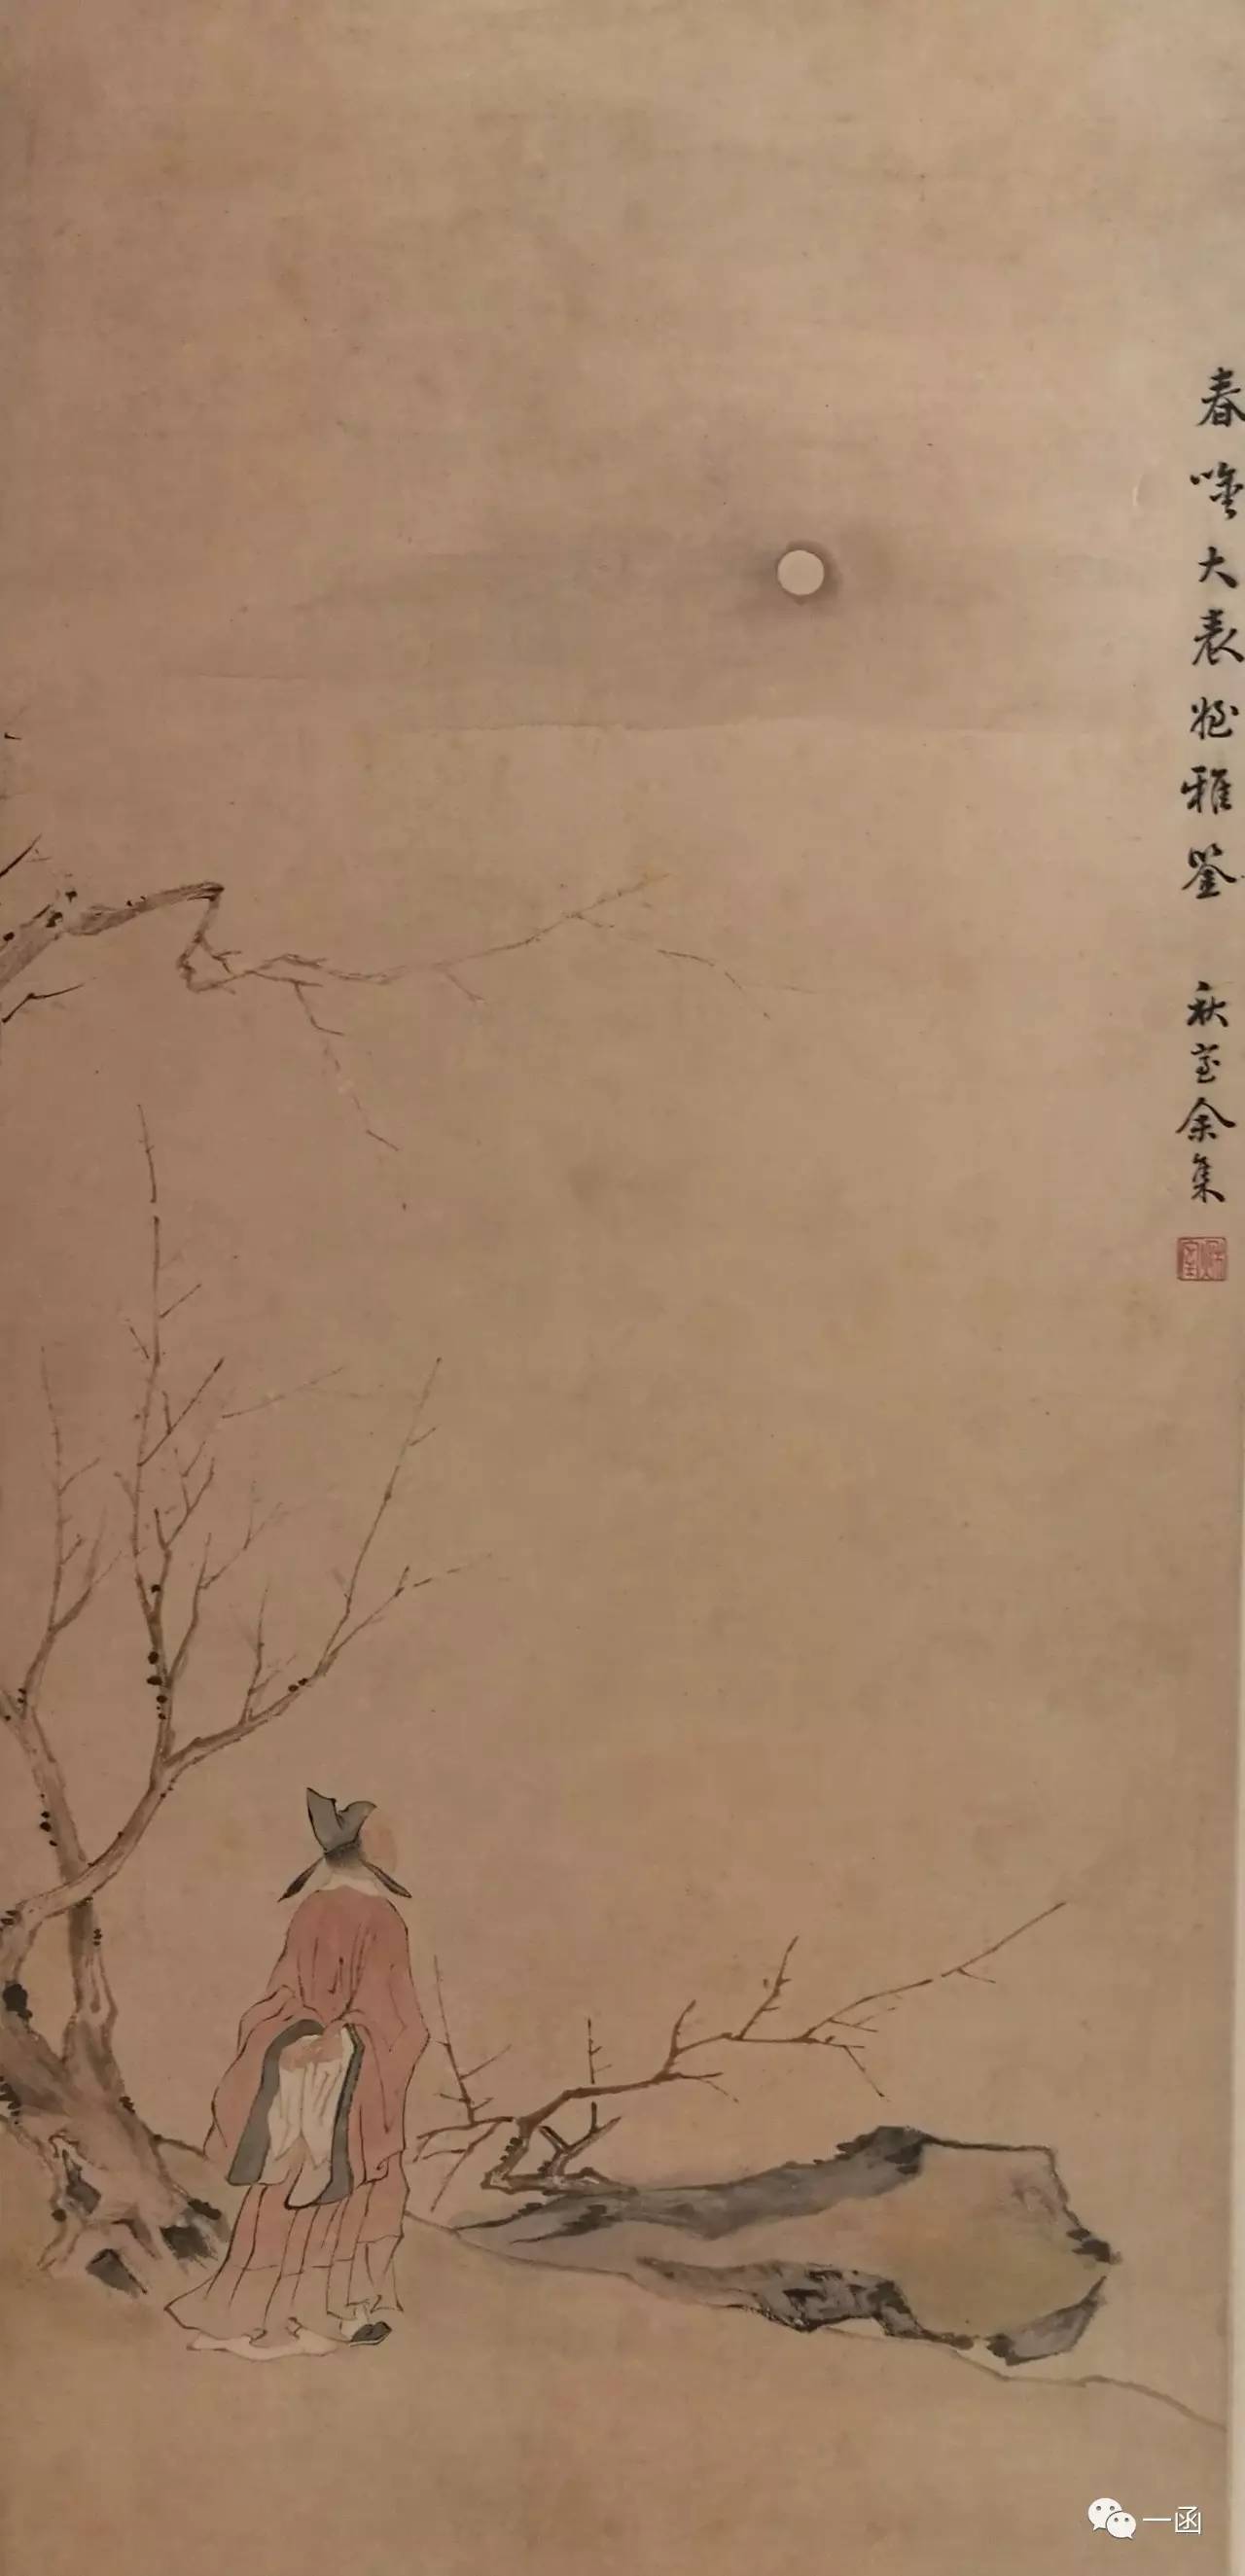 一函| 上海博物馆藏《余集画黄小松像轴》辨伪考-搜狐